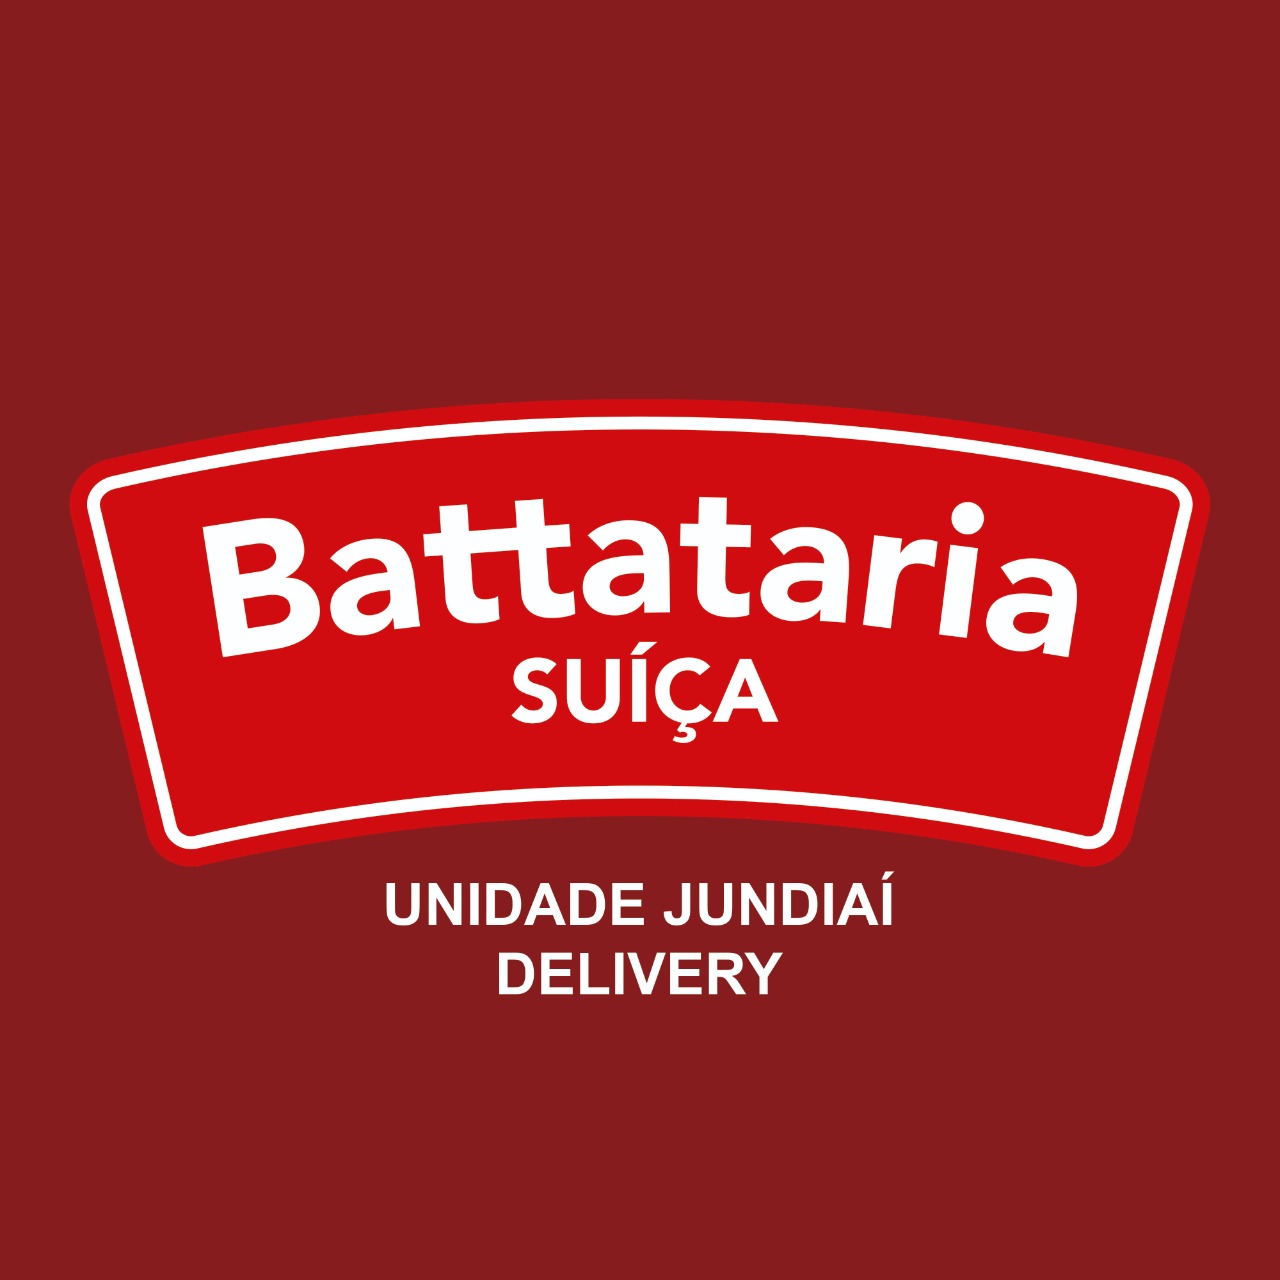 Battataria Jundiaí